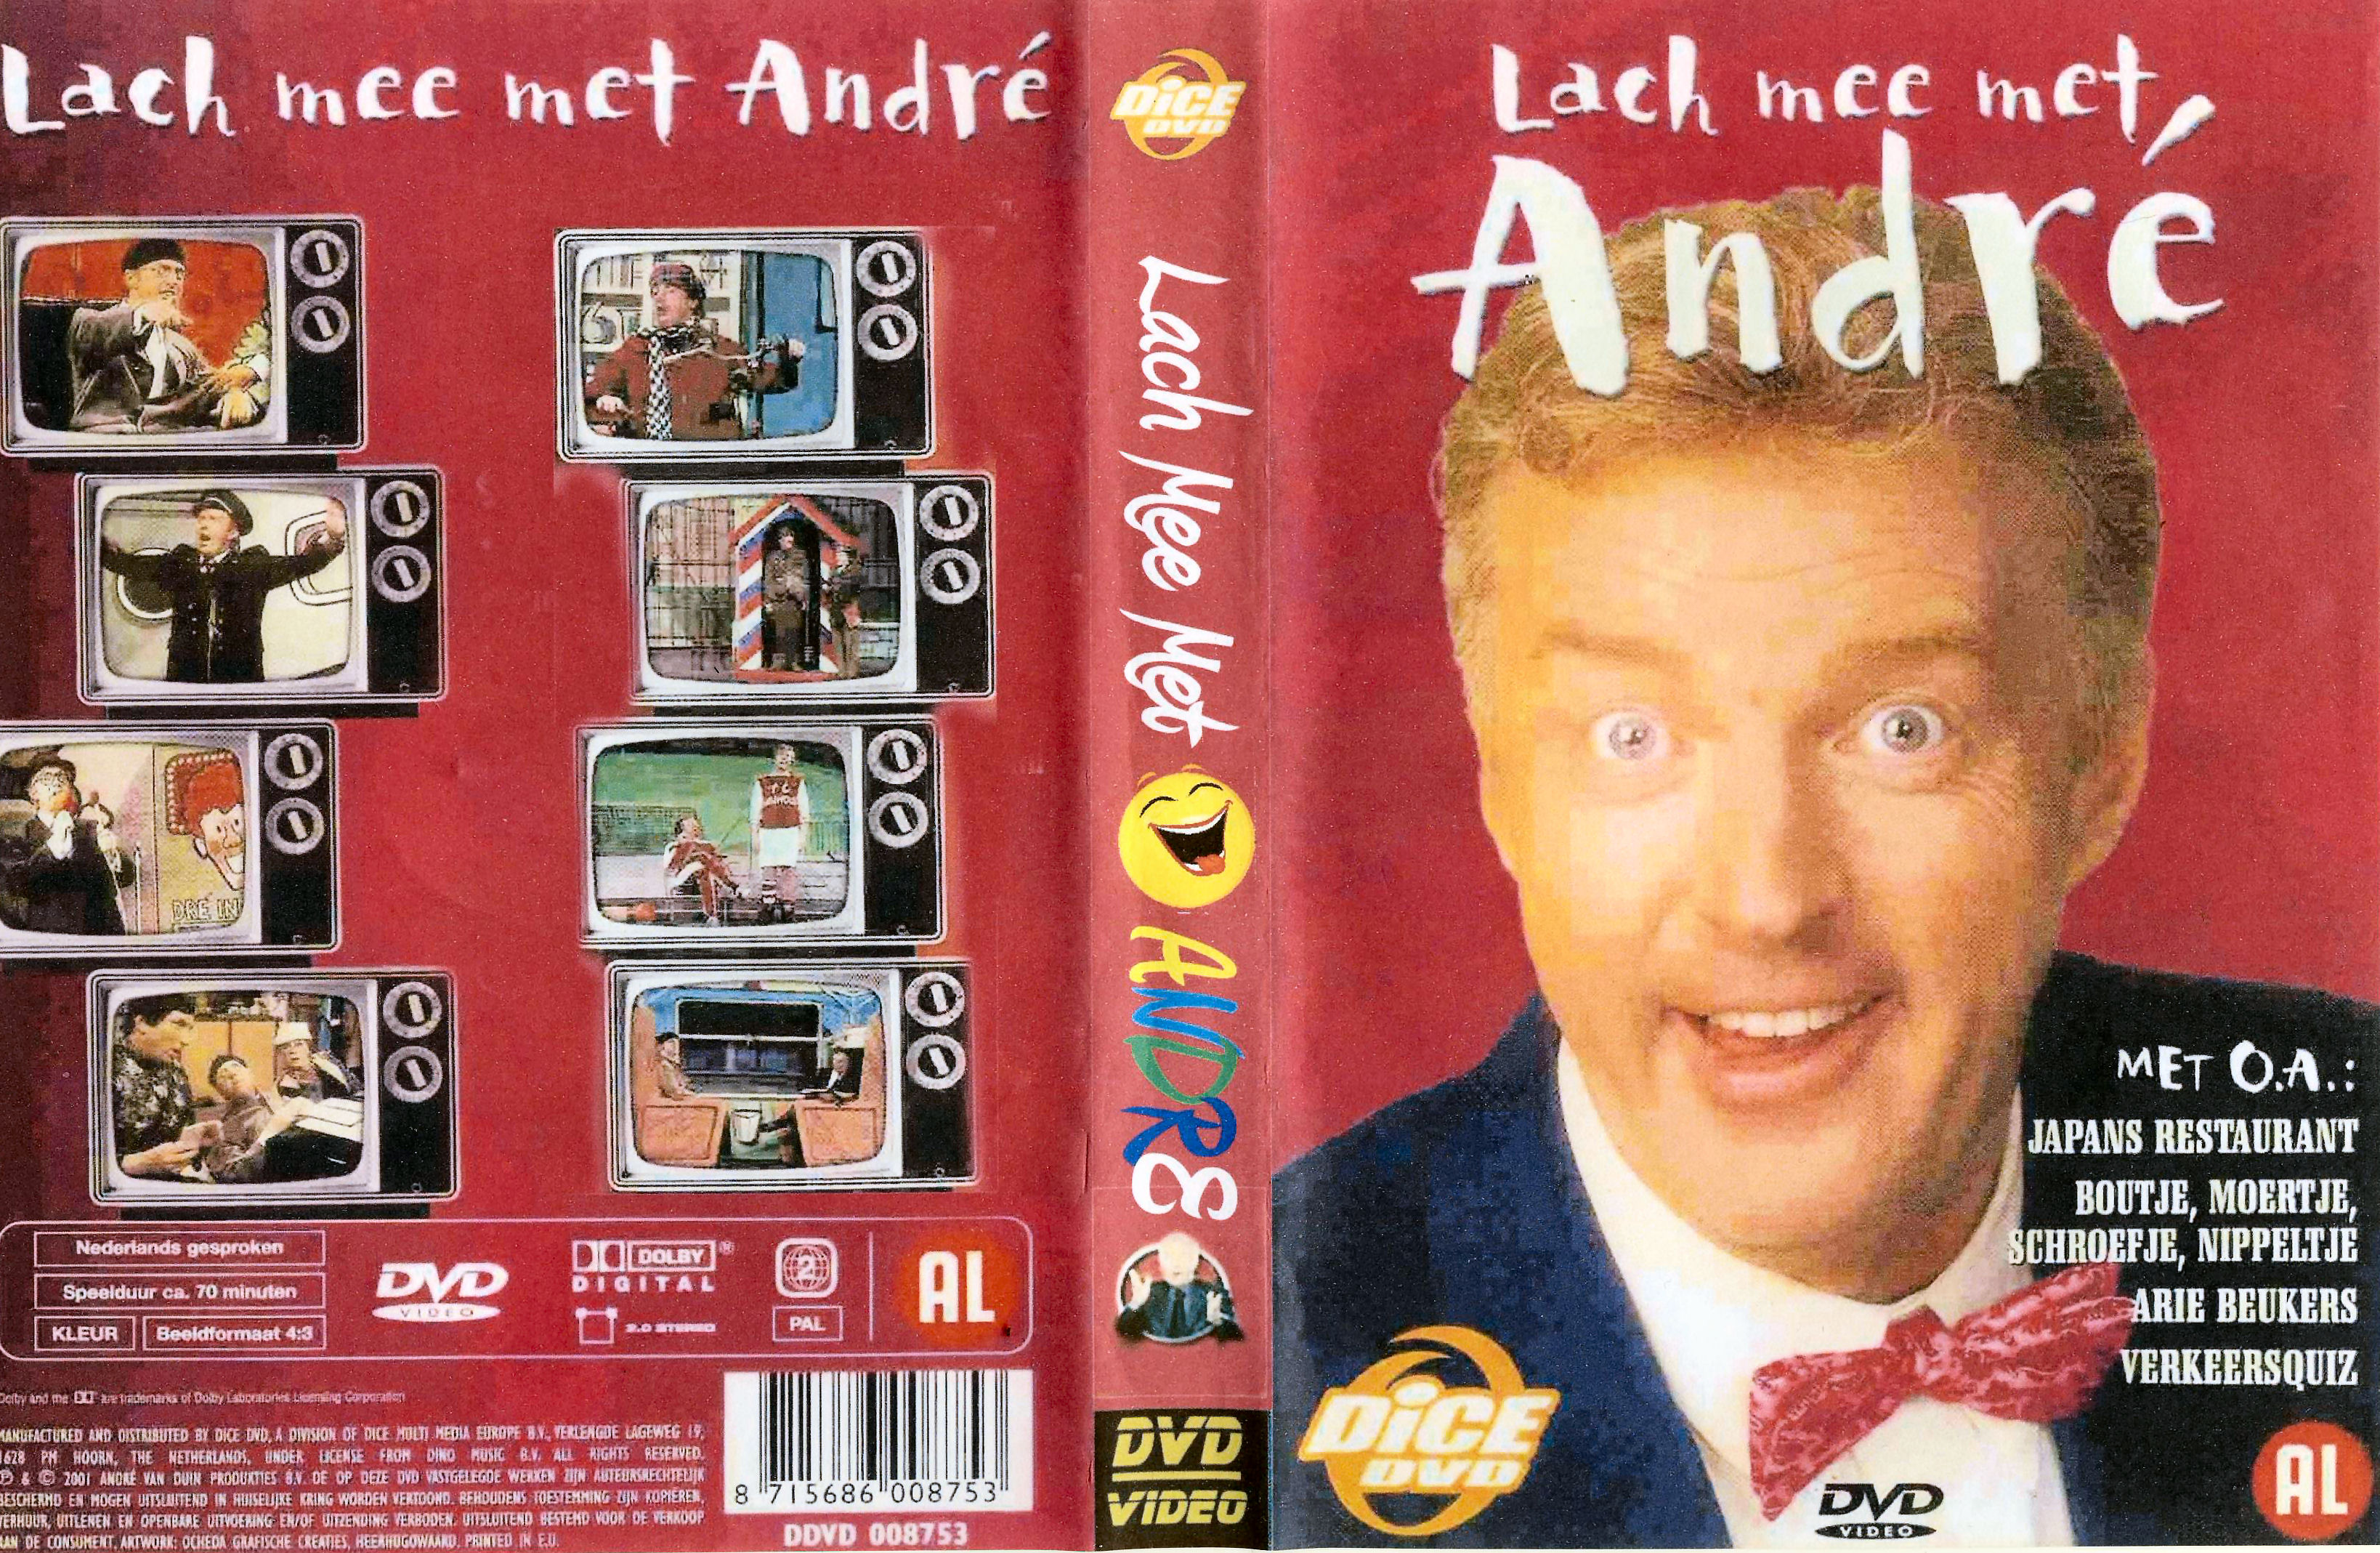 Lach mee met Andre DVD 2 van 6